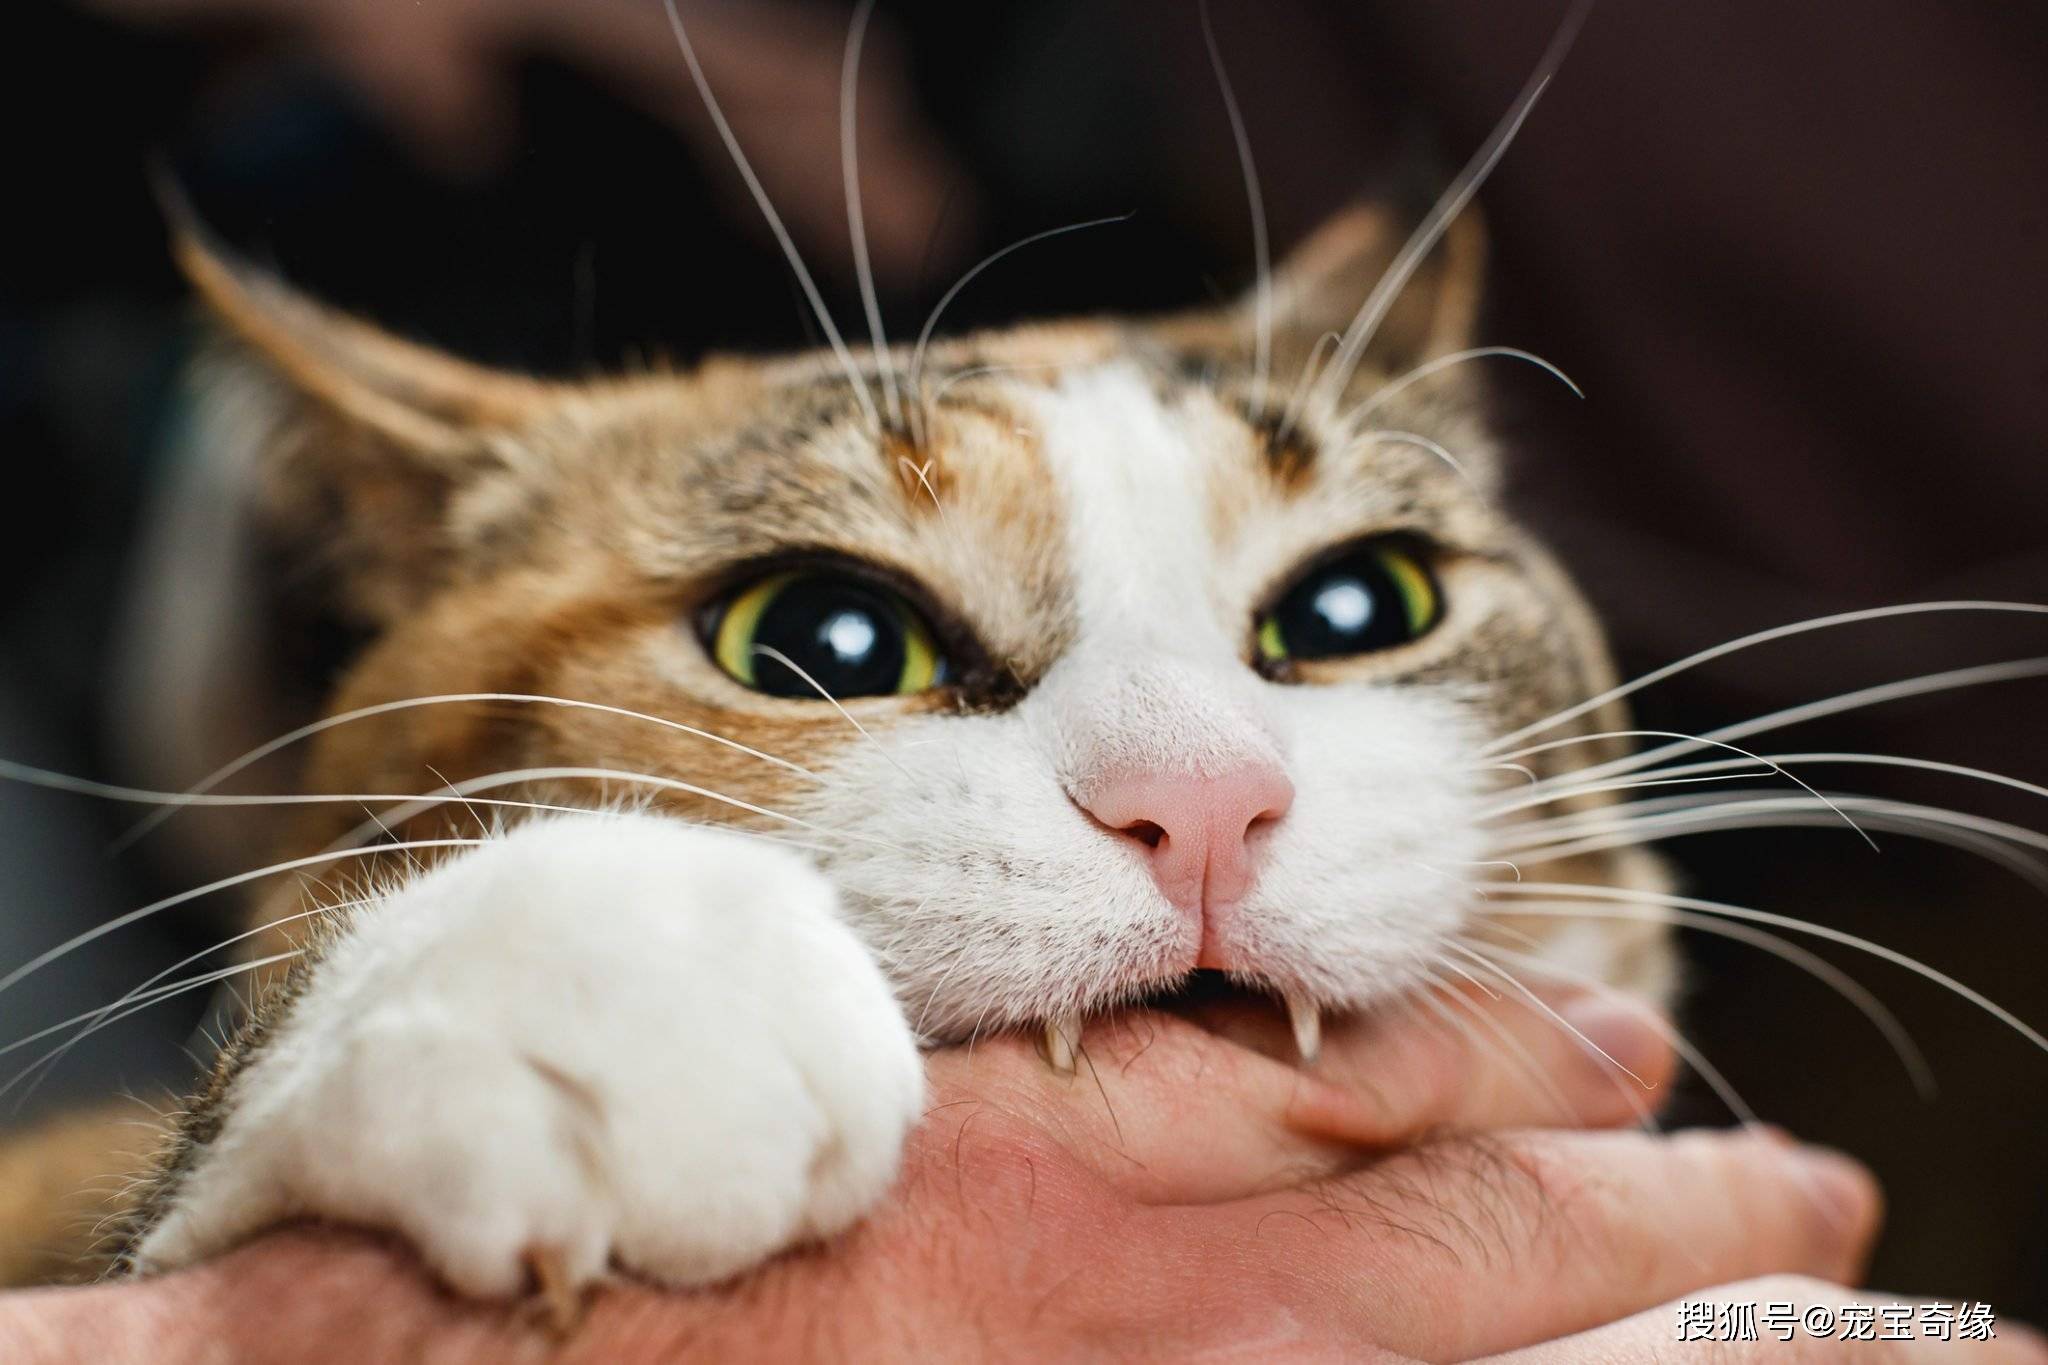 终于明白了:为什么猫咪会咬人?